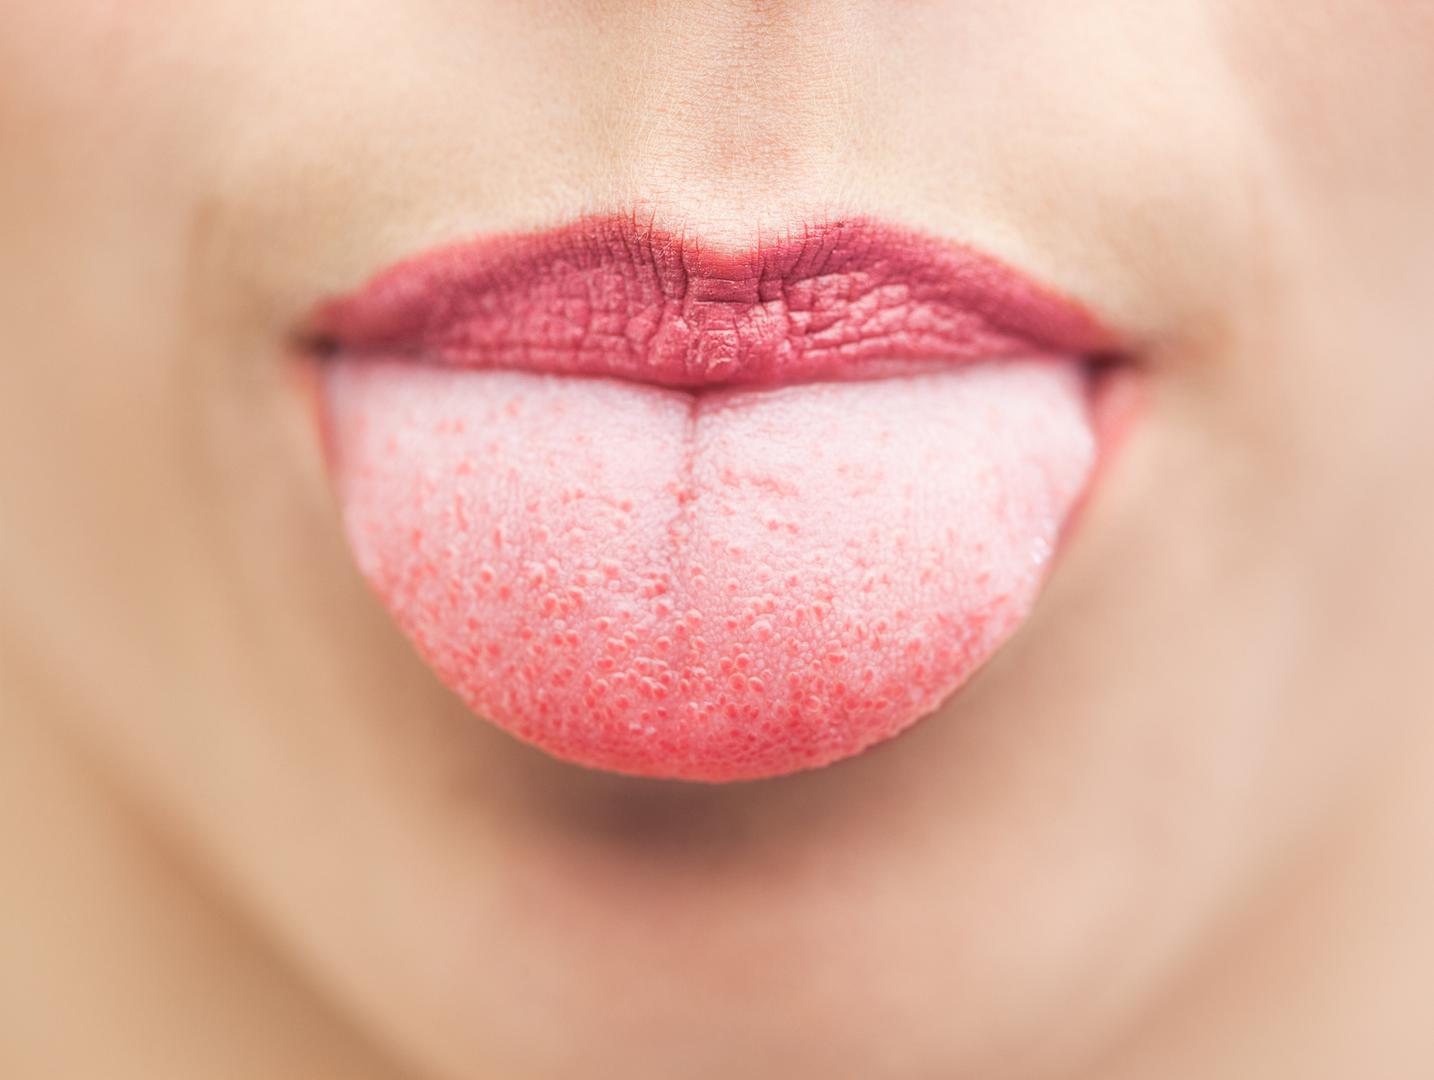 – Katkada je jezik glavni krivac za loš zadah, ne zaboravite ga dobro očistiti jer se bakterije skupljaju na dnu jezika – zaključuje Ada.